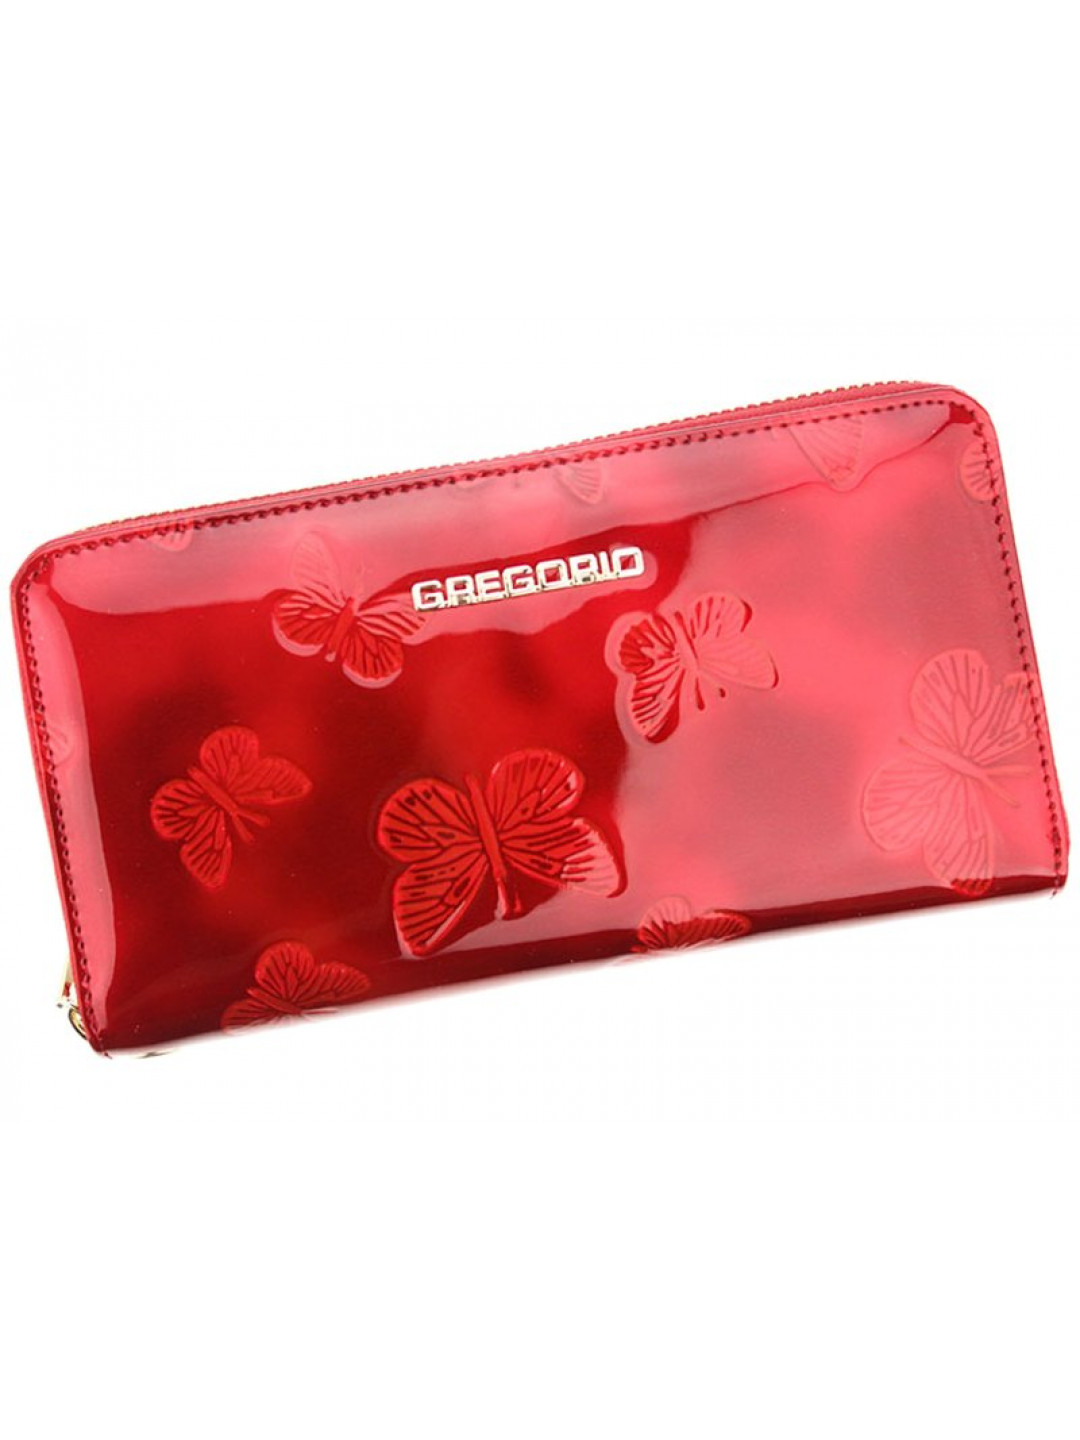 Dámská kožená pouzdrová peněženka červená – Gregorio Mallvina